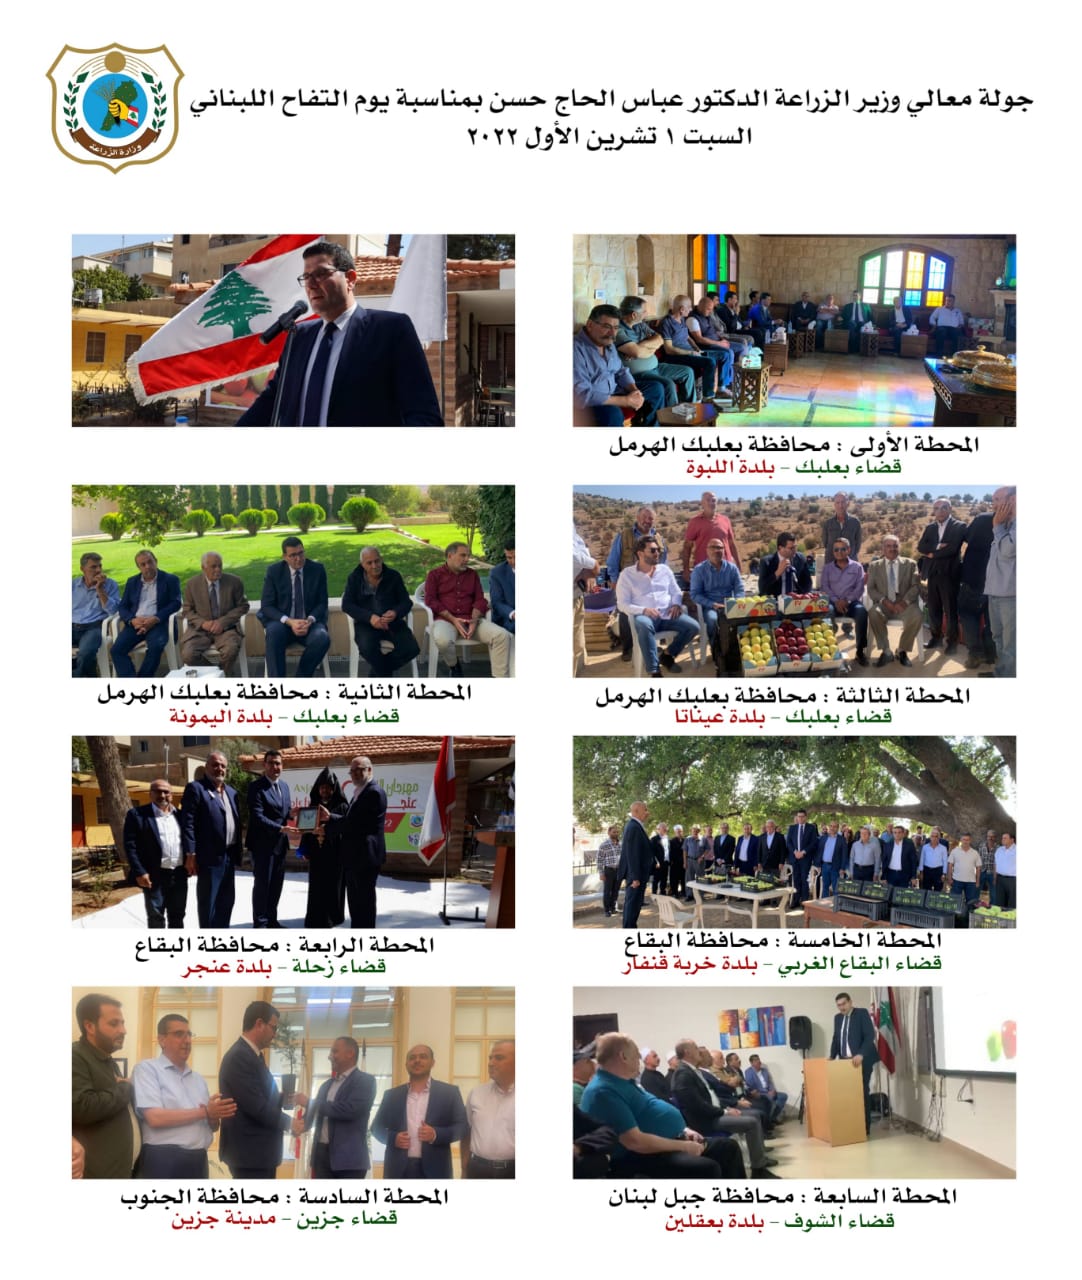 وزير الزراعة الدكتور عباس الحاج حسن جال في كل لبنان دعماً للتفاح اللبناني